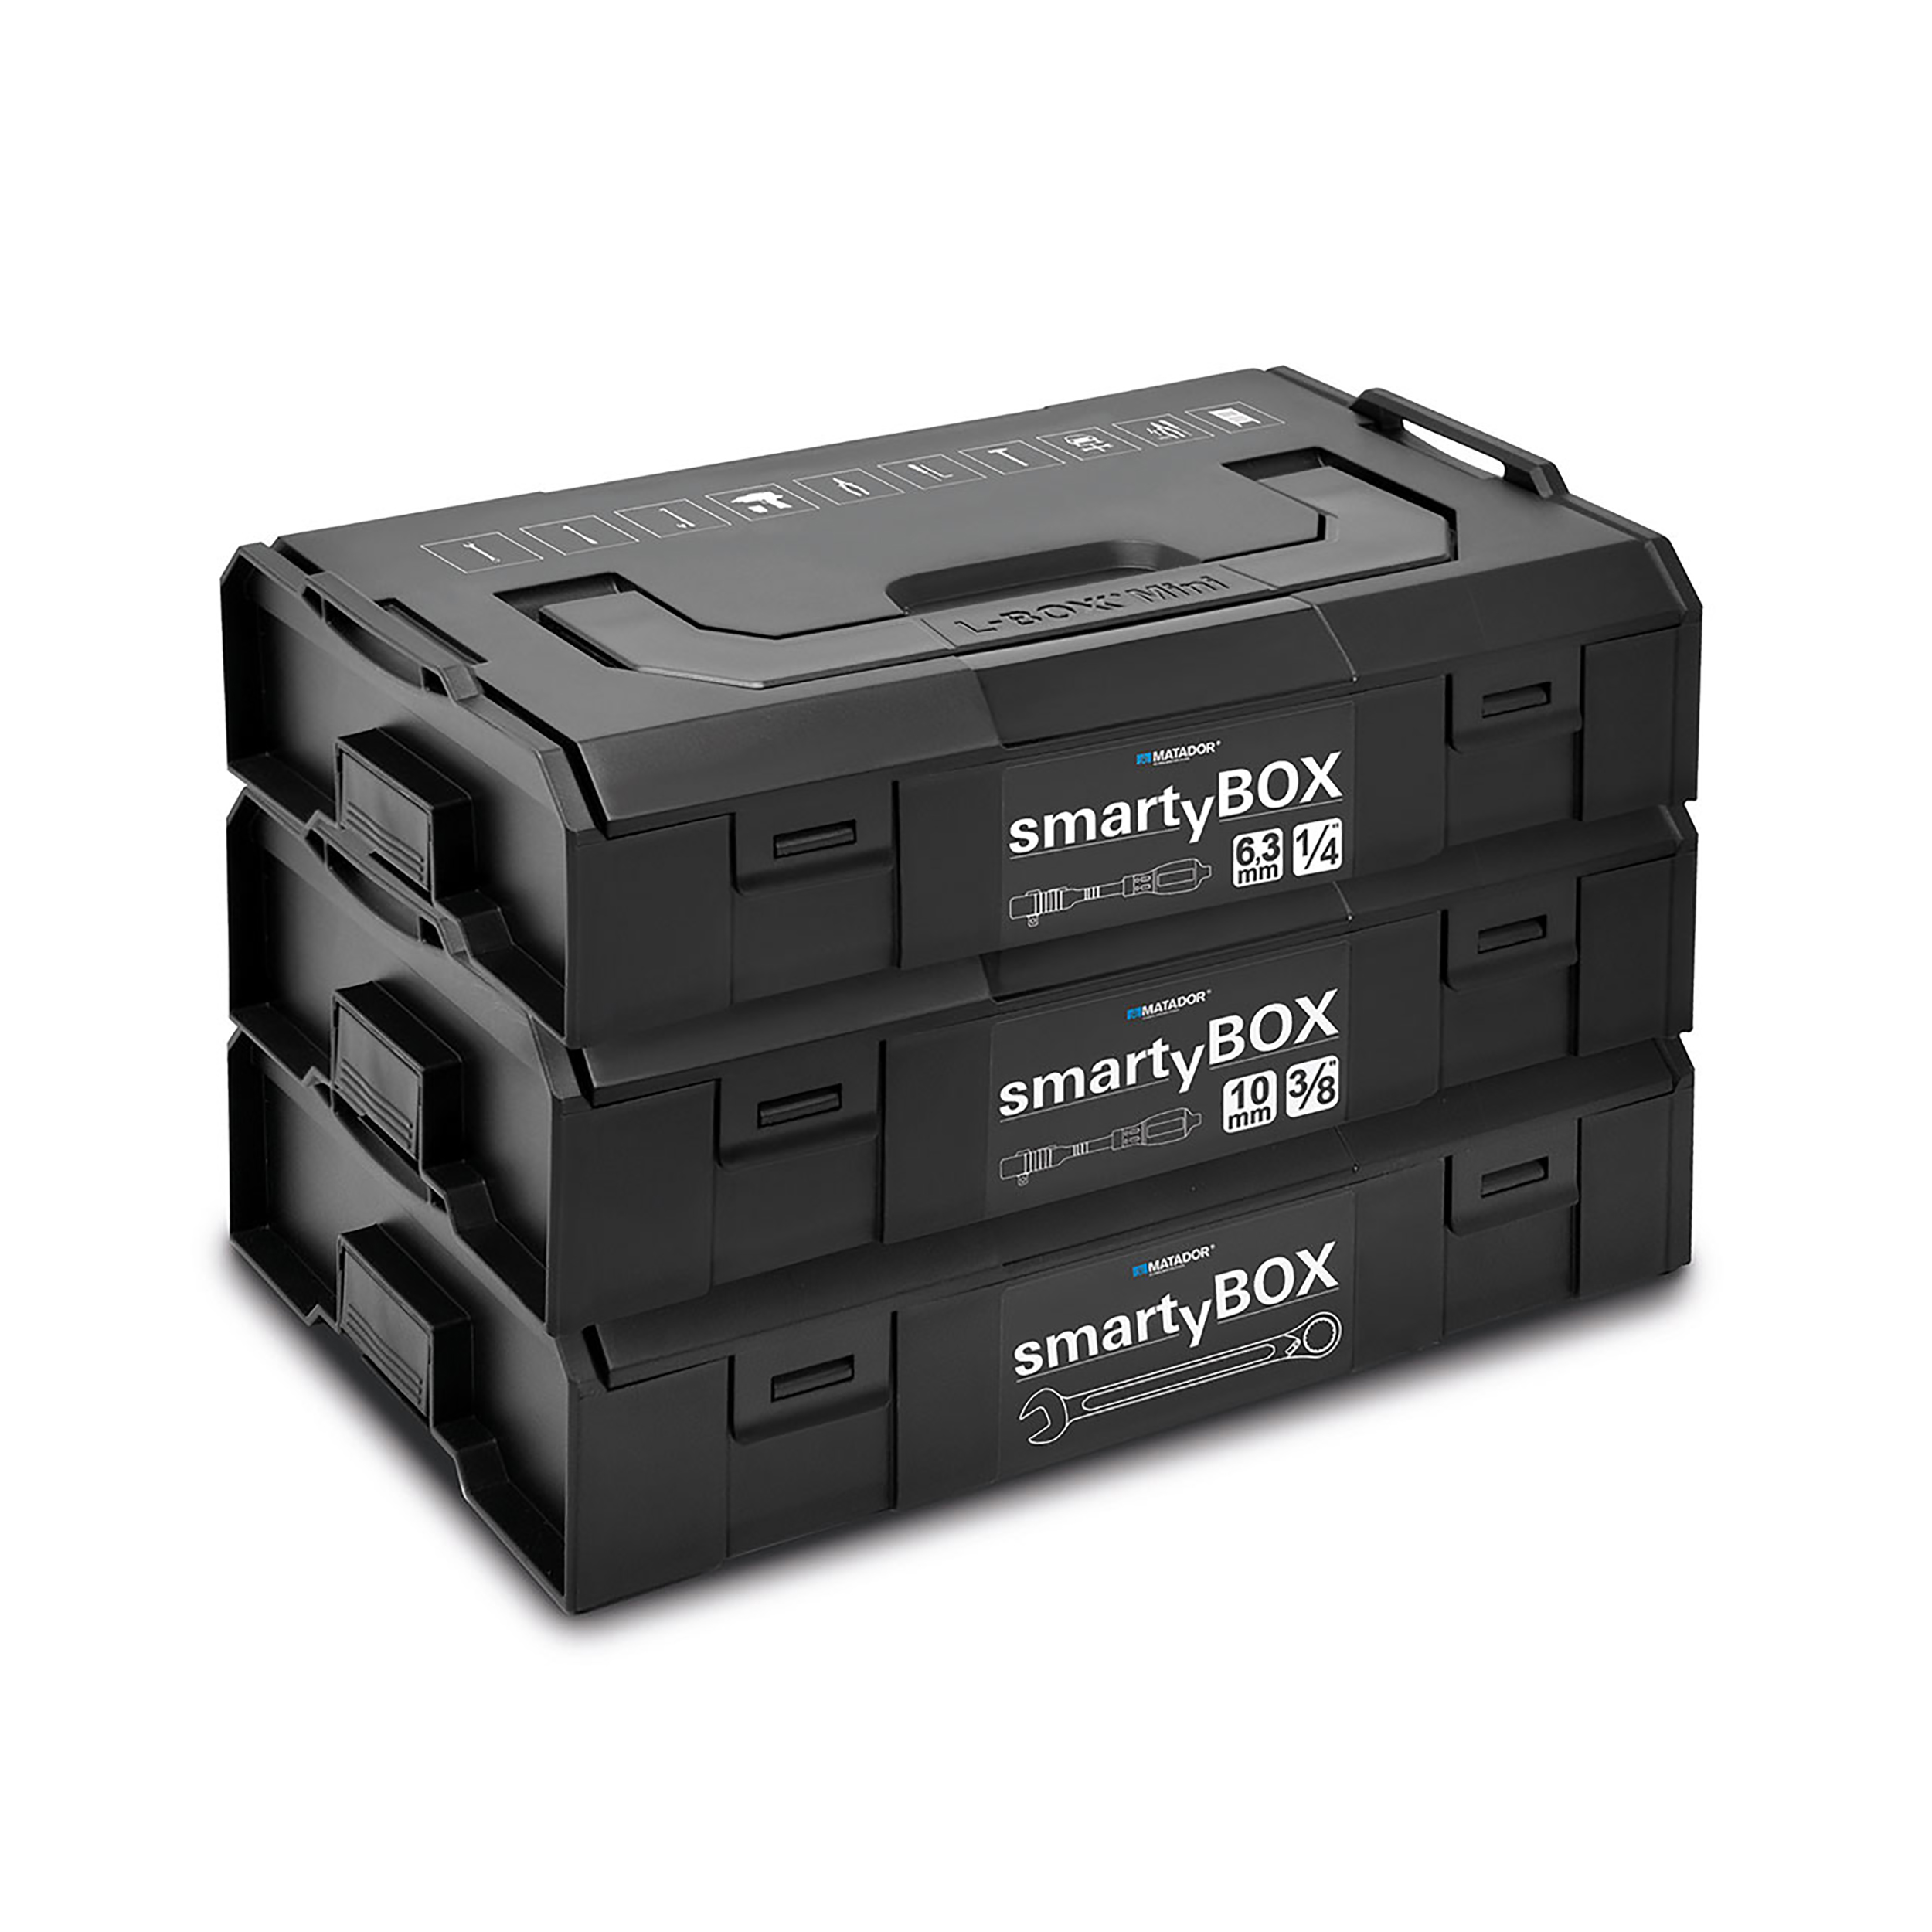 smartyBOX S2 Kompakt, 25-tlg., 10 mm (3/8"): 6-22 mm, MATADOR Art.-Code: 81453115